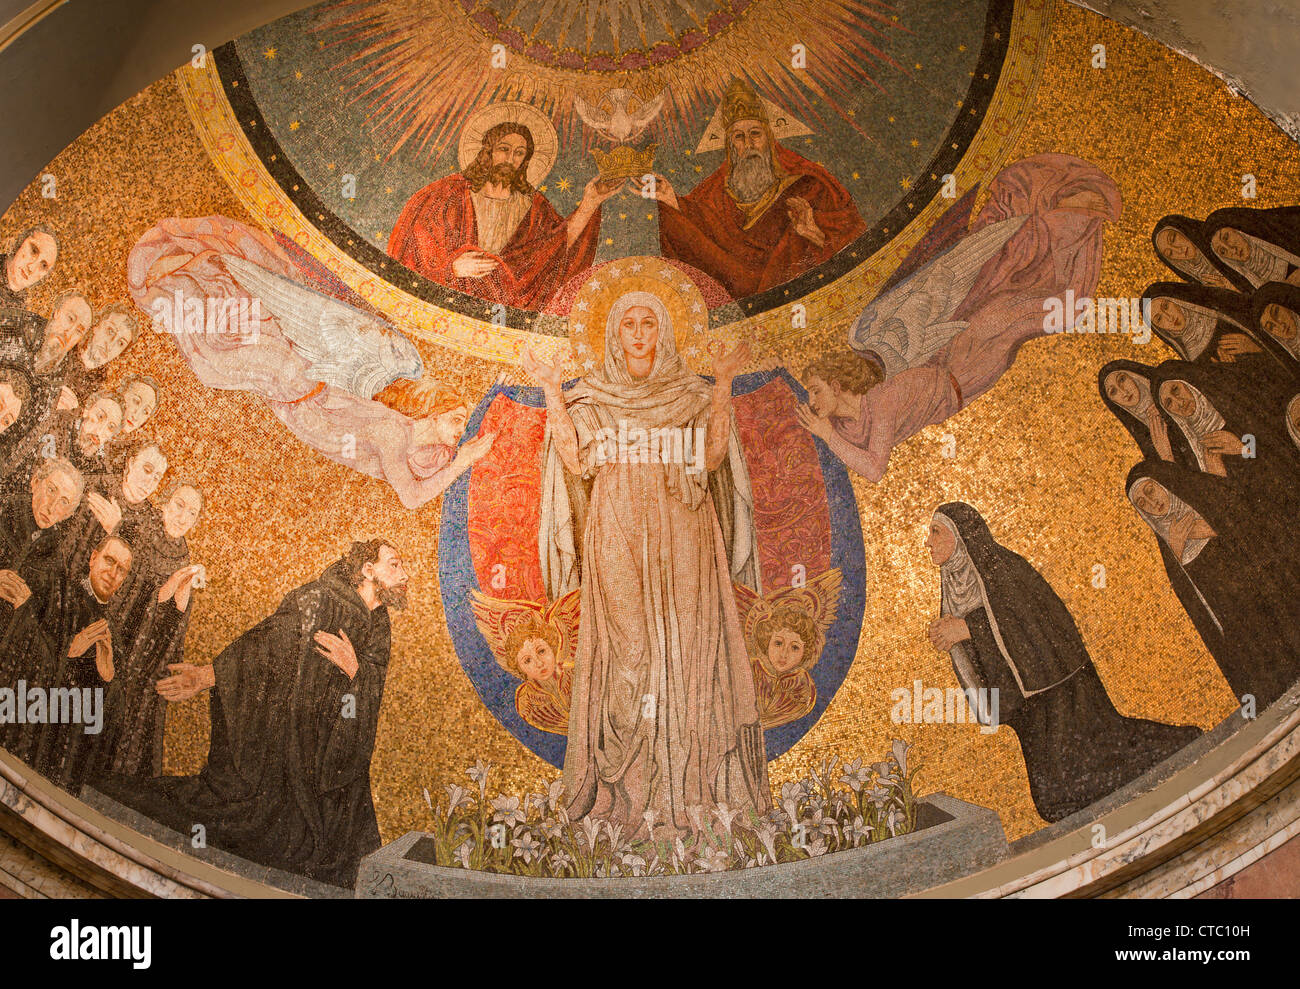 Rom - 22 März: Mosaik der Jungfrau Maria aus dem Apsis der Kirche Santa Prassede am 22. März 2012 in Rom. Stockfoto